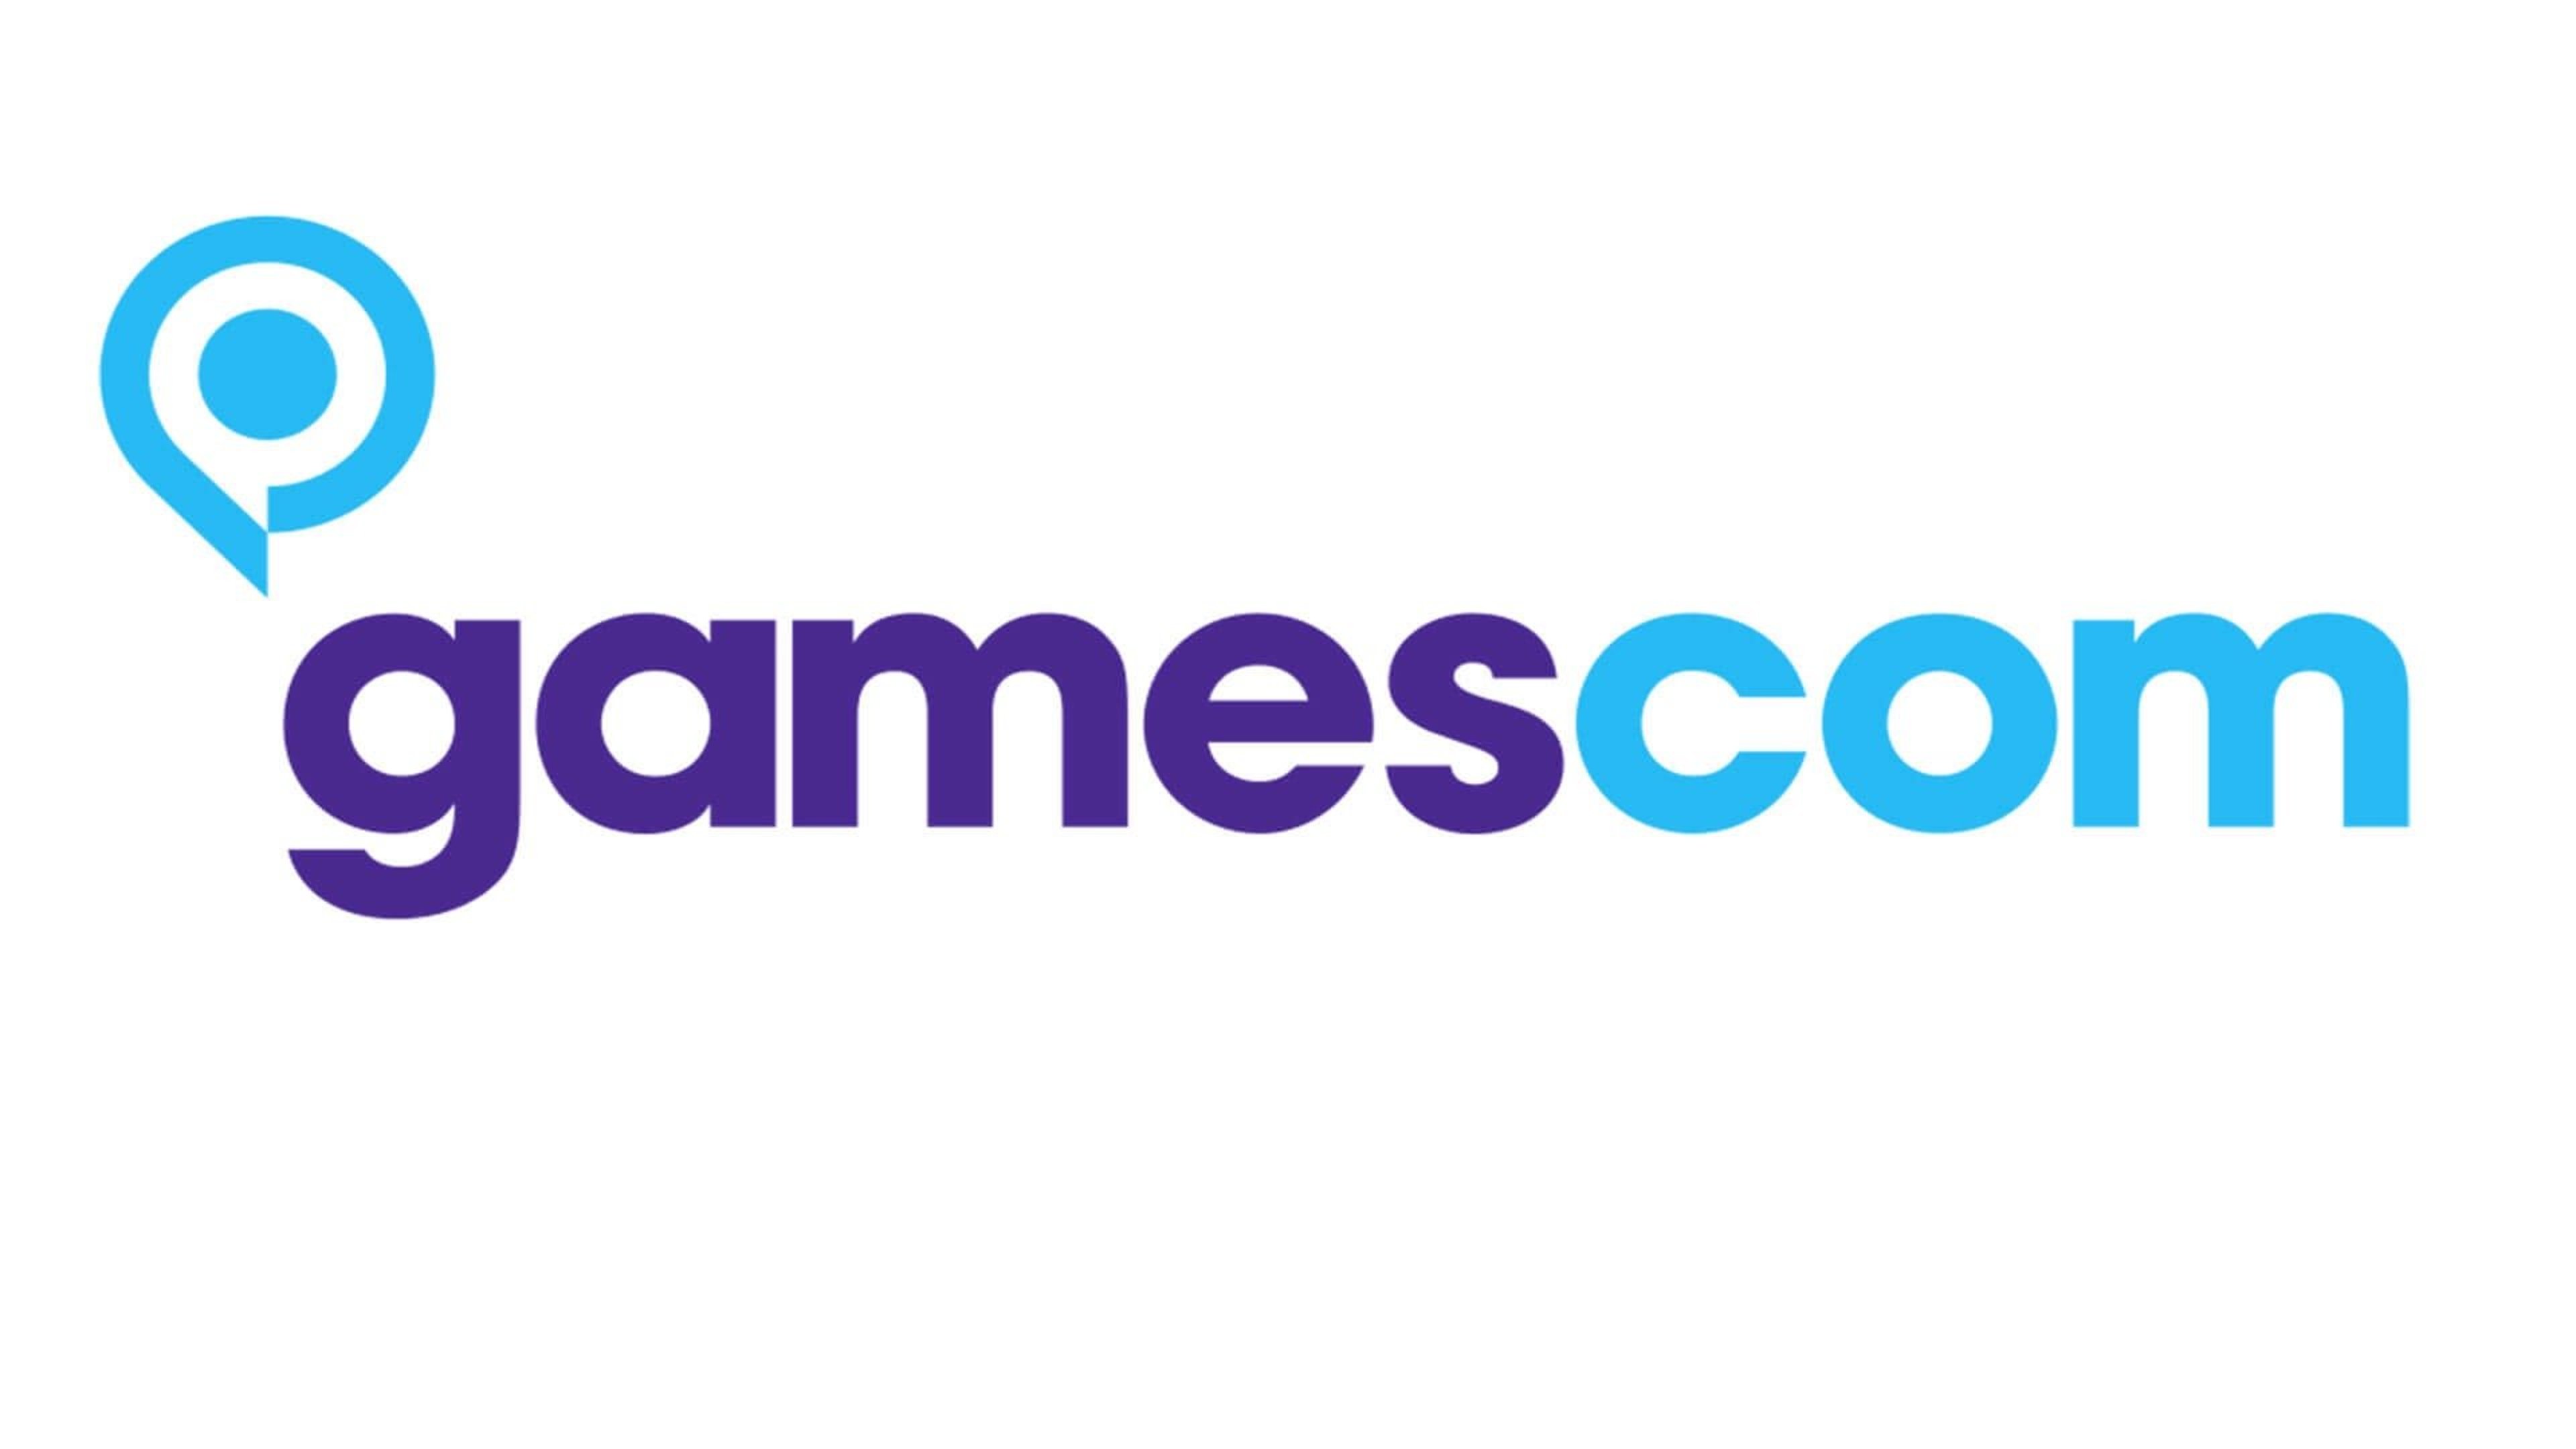 L’Olanda è stata scelta come paese partner di gamescom 2019 Cover